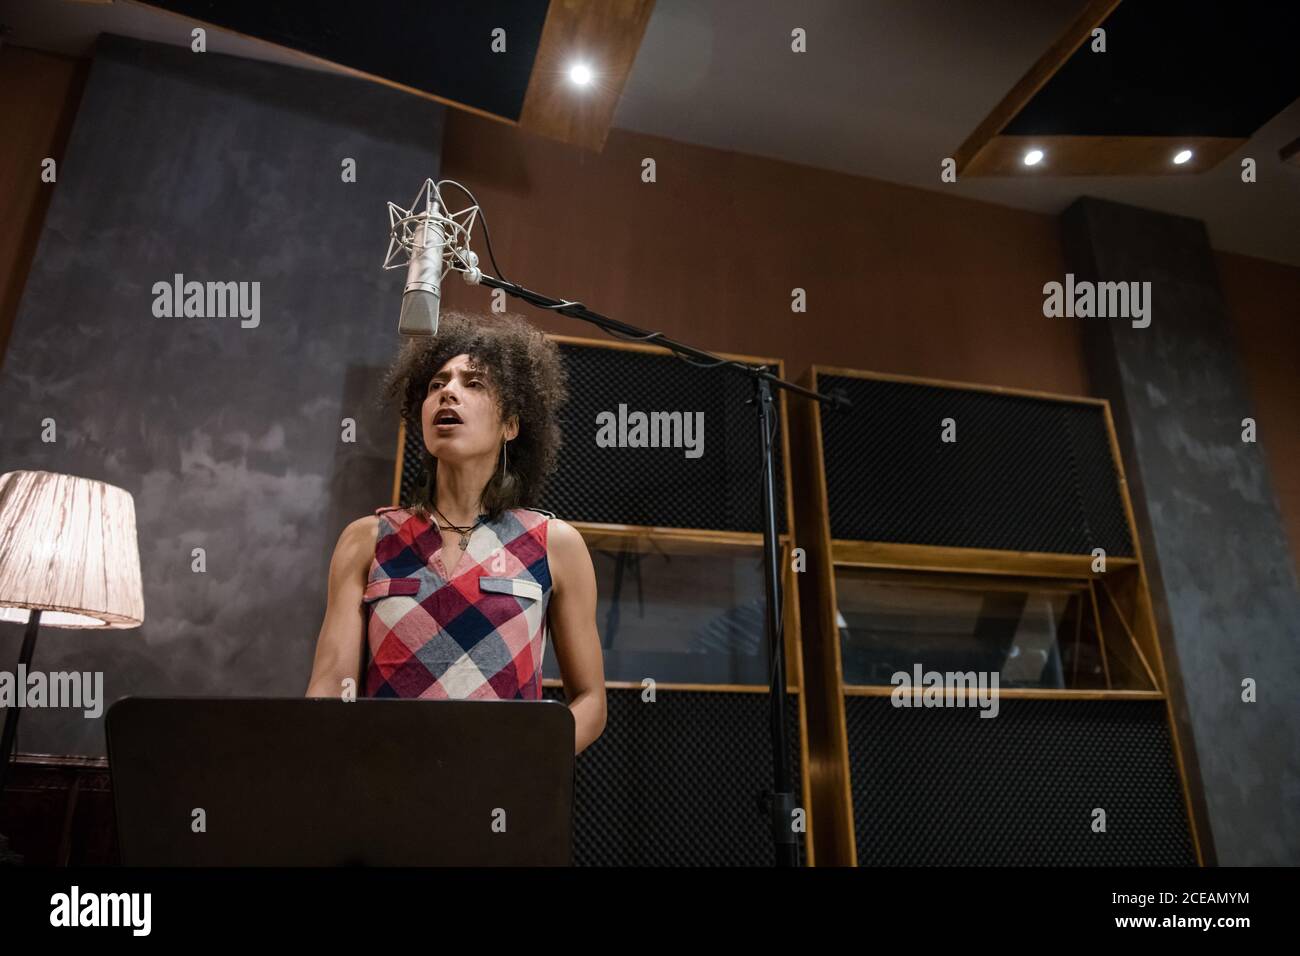 Hübsche Frau im lässigen Outfit singt beim Proben im Aufnahmestudio Lied. Stockfoto